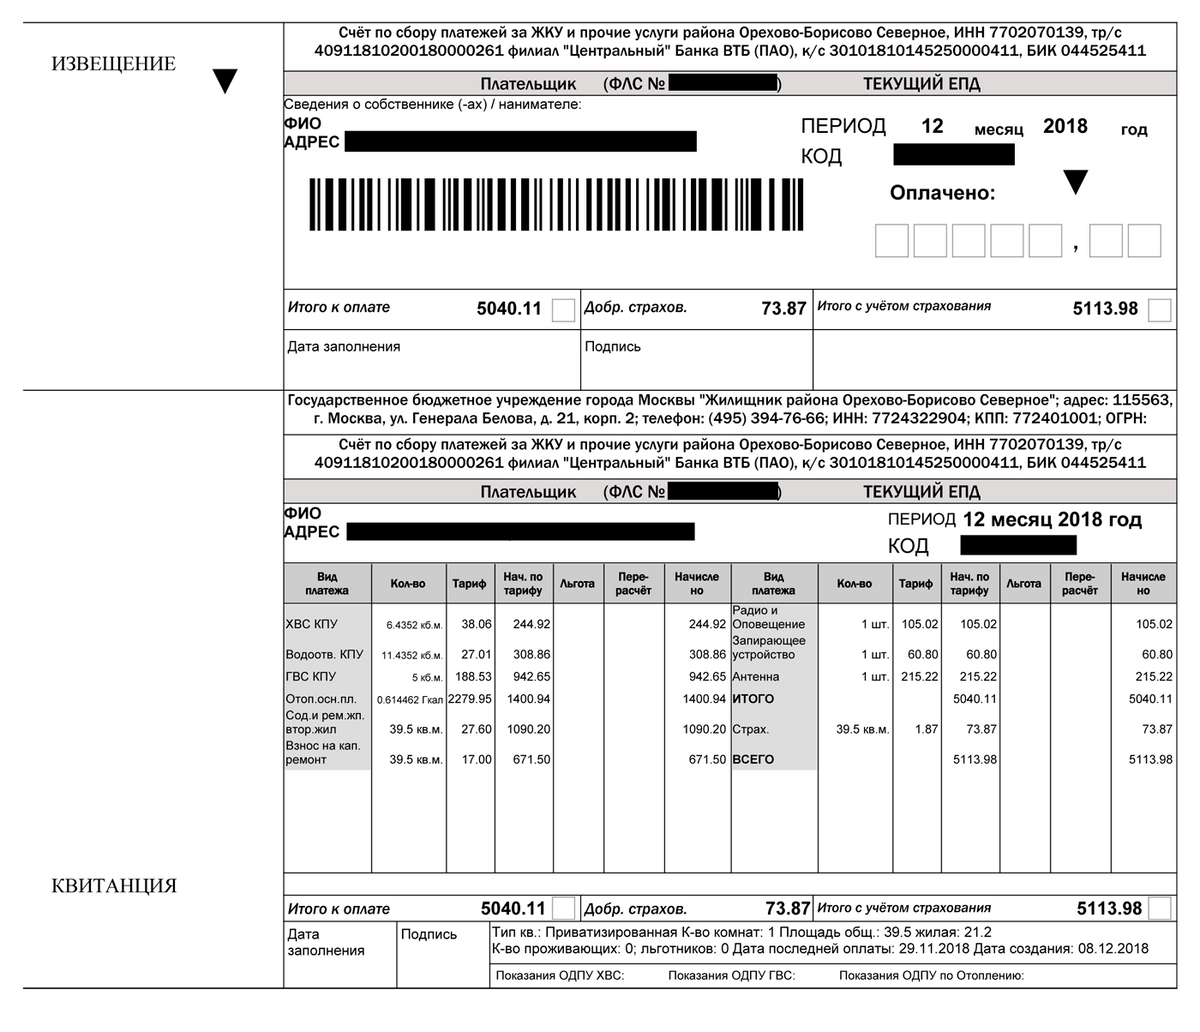 Такие платежные документы отправляют по Москве. Они содержат список услуг, объем потребления и начисления по каждой, общую сумму и стоимость страхования